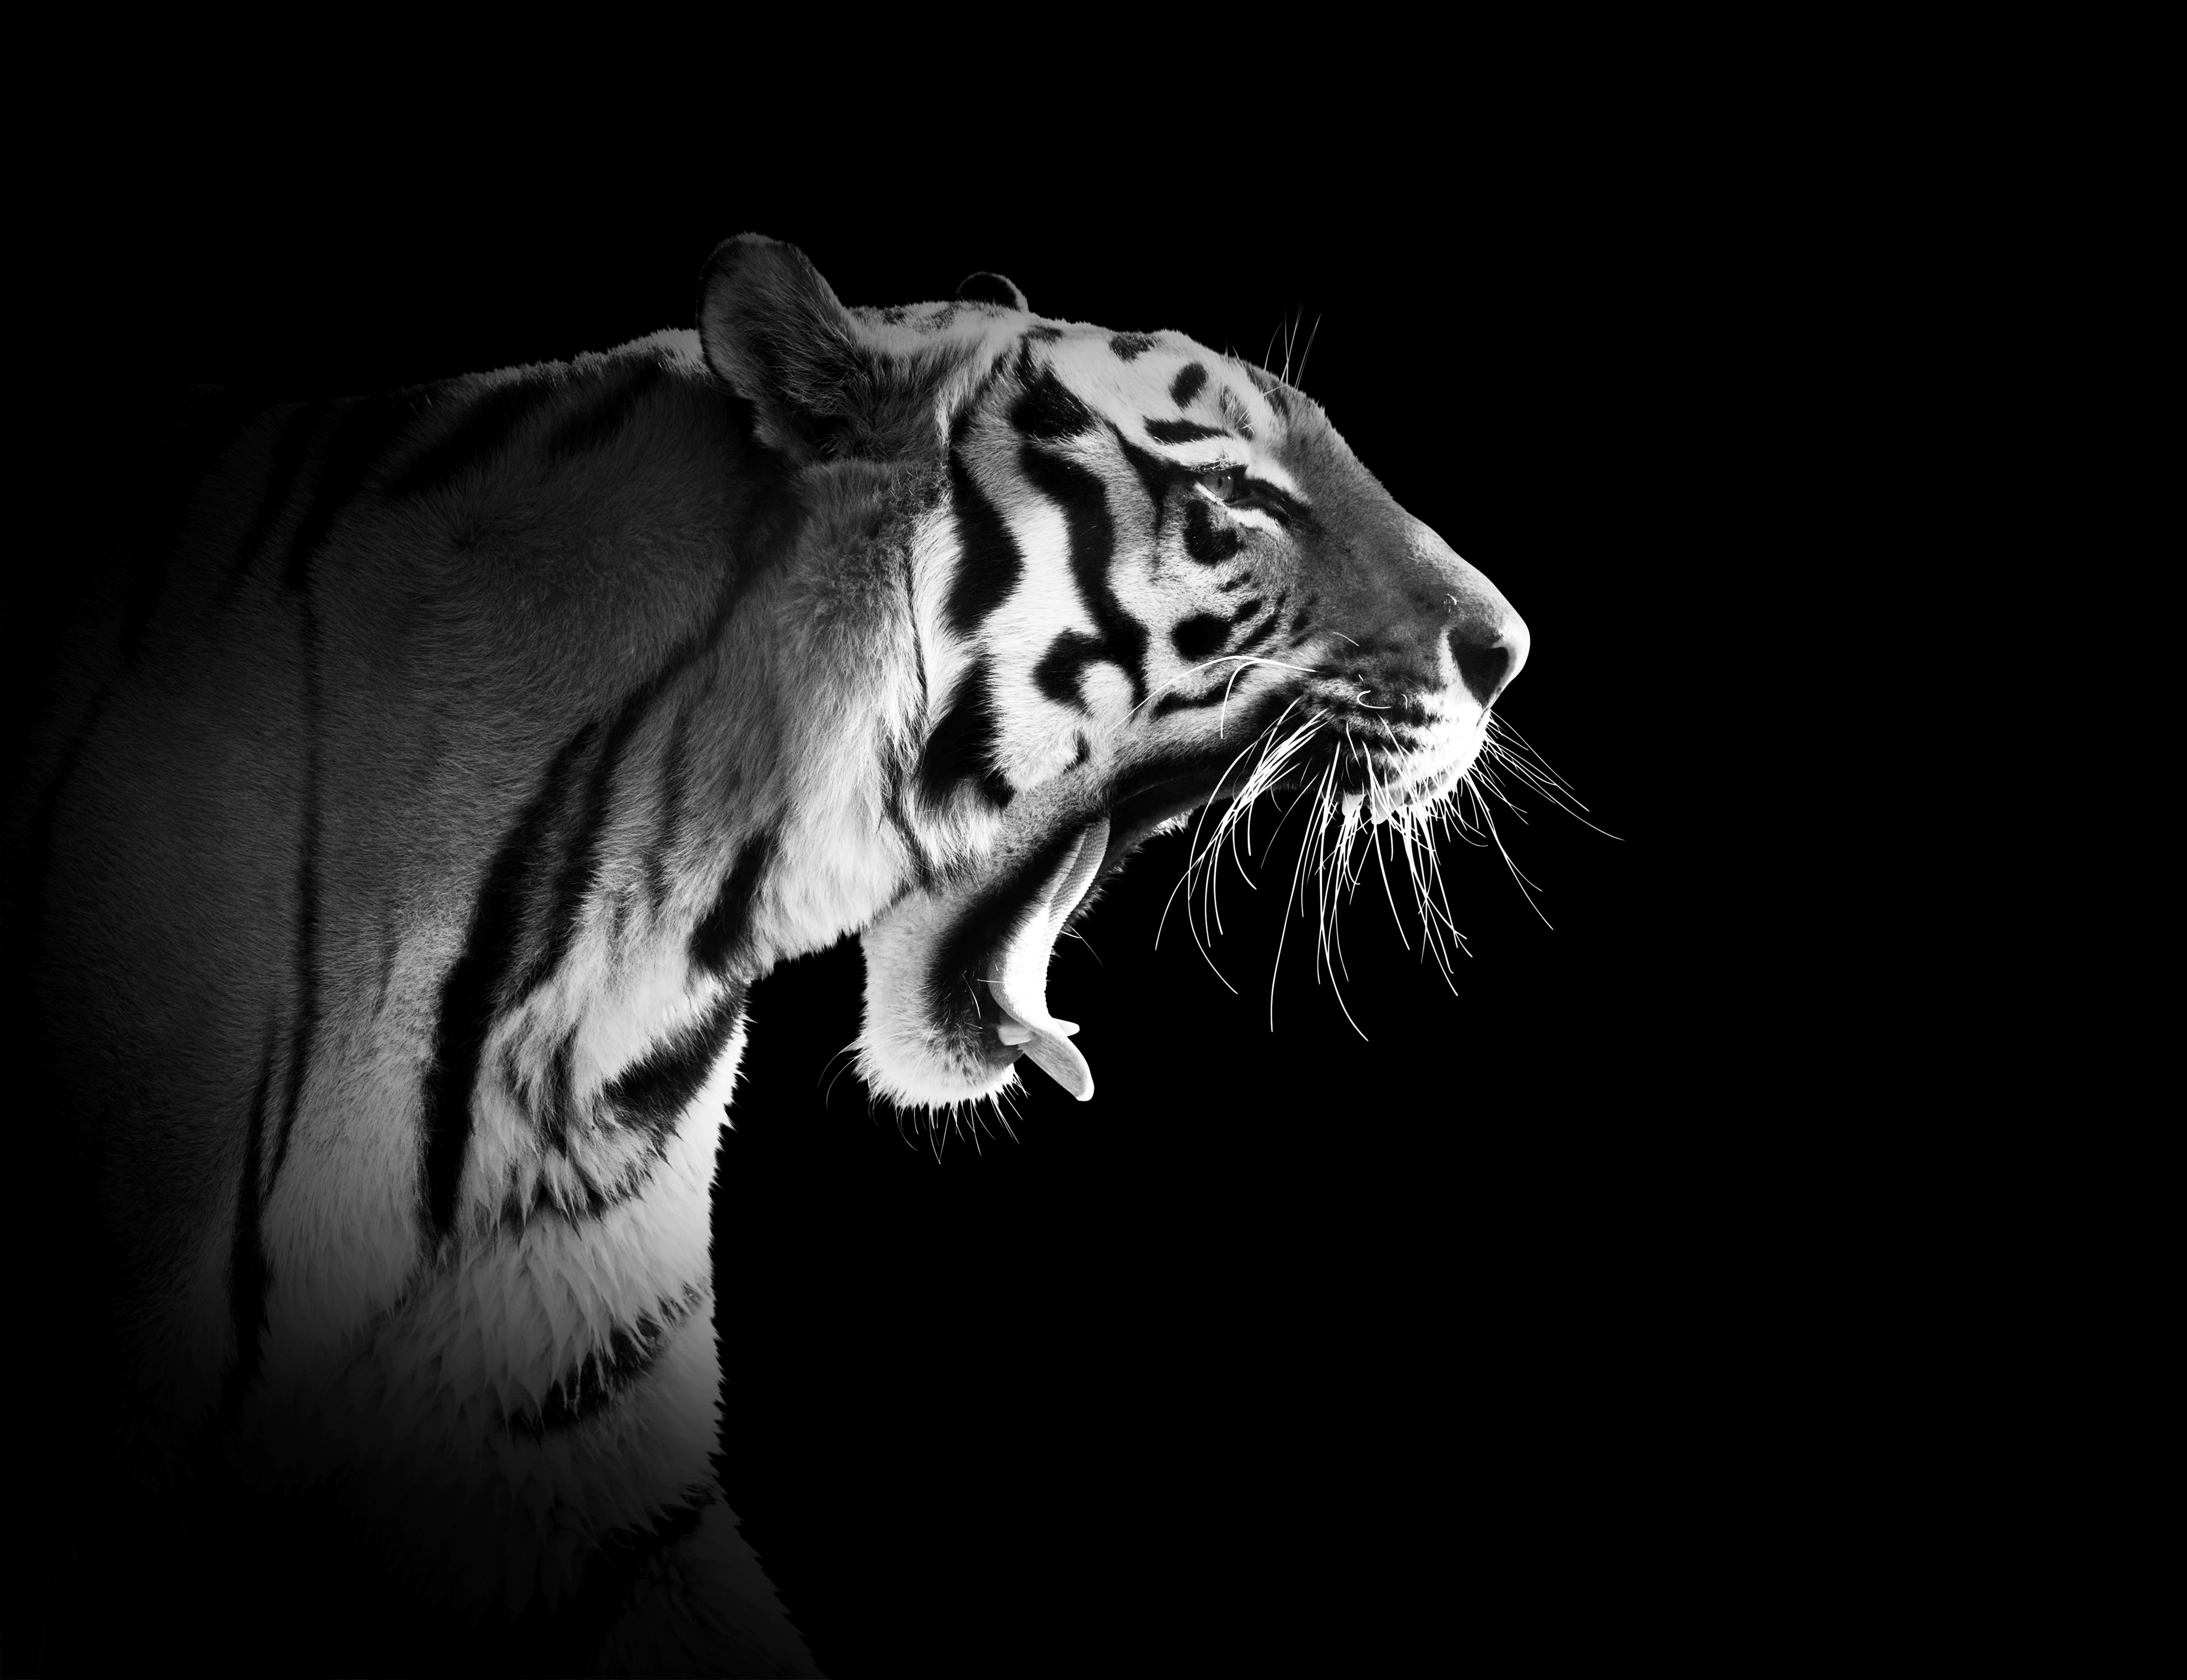  Weißer Tiger Hintergrundbild 5303x4073. Tiger Schwarz & Weiß. Schwarz Weiß